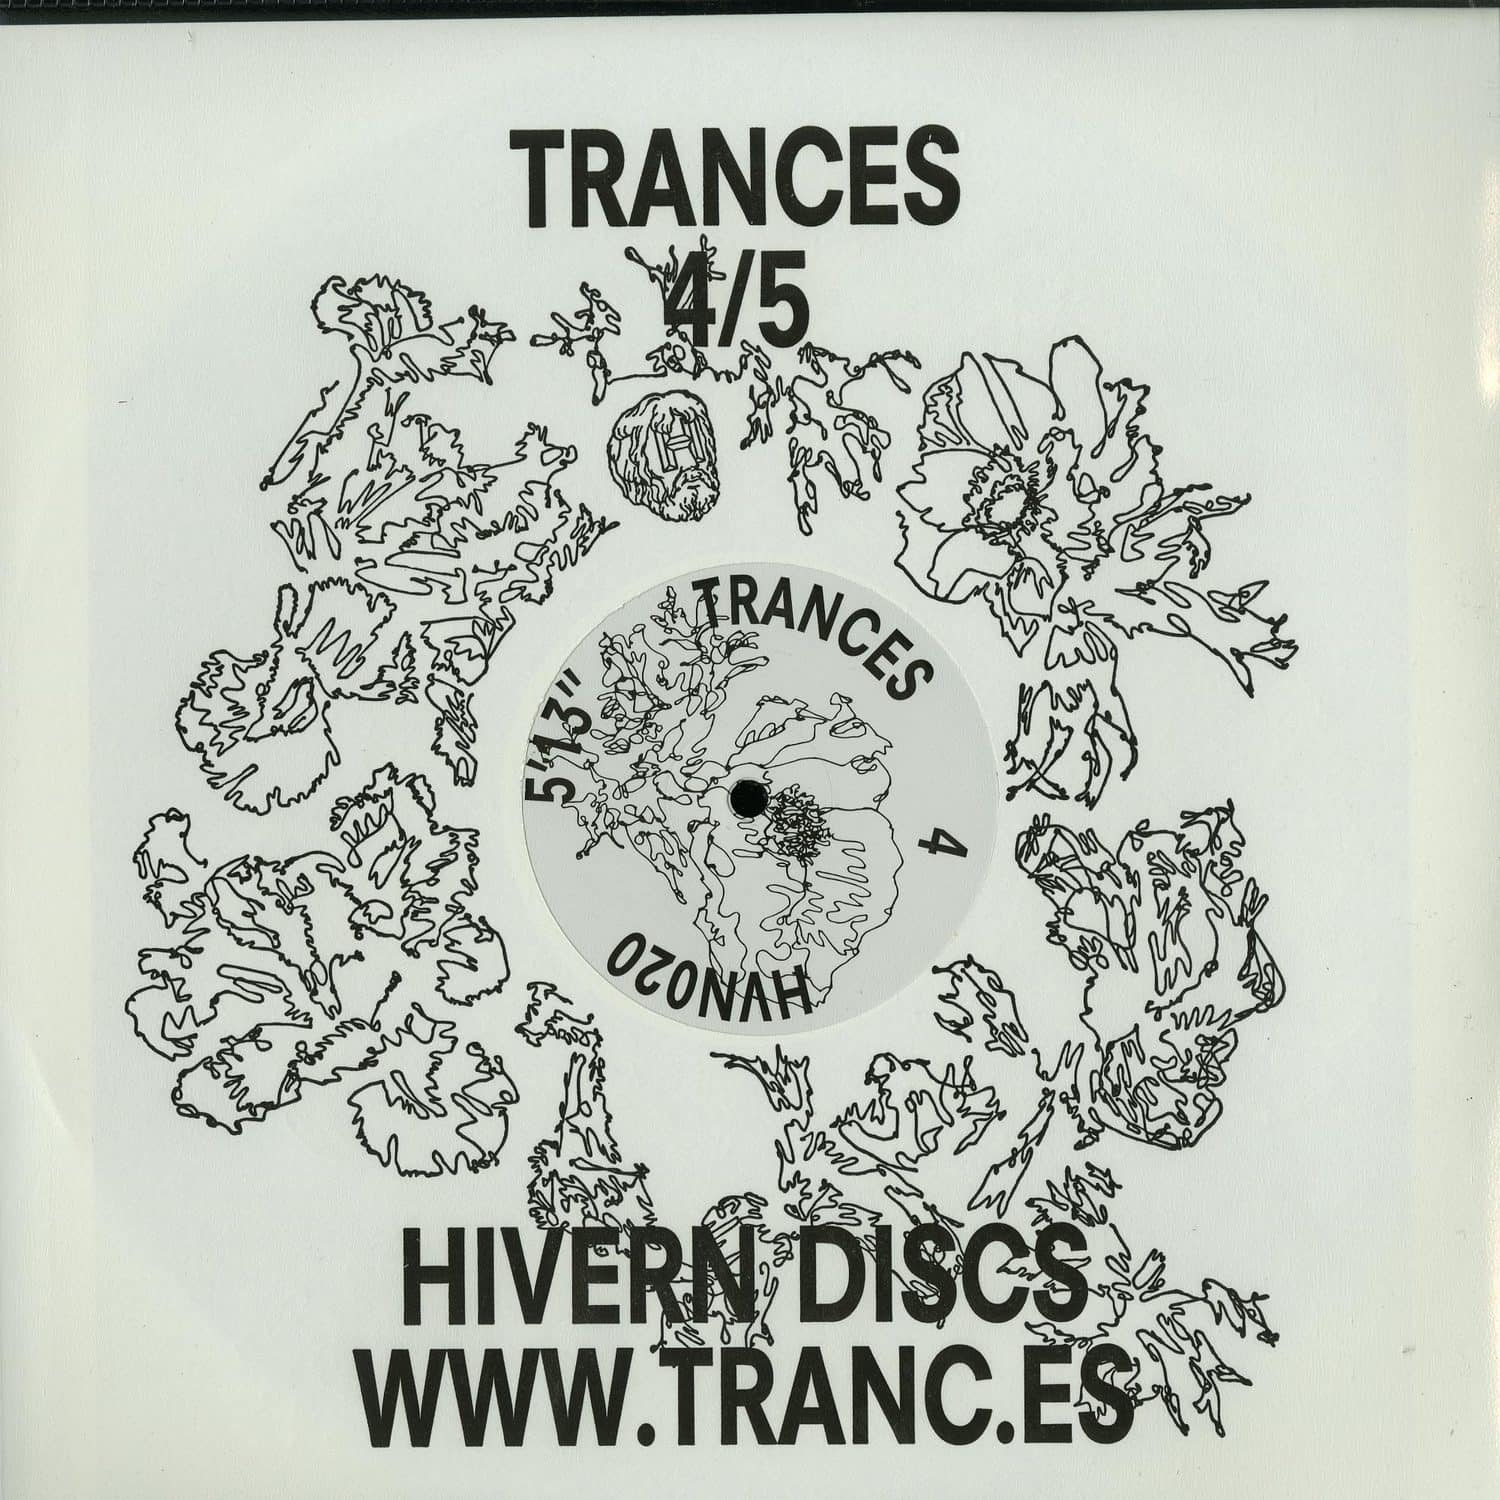 Tranc.es - TRANCES 4/5